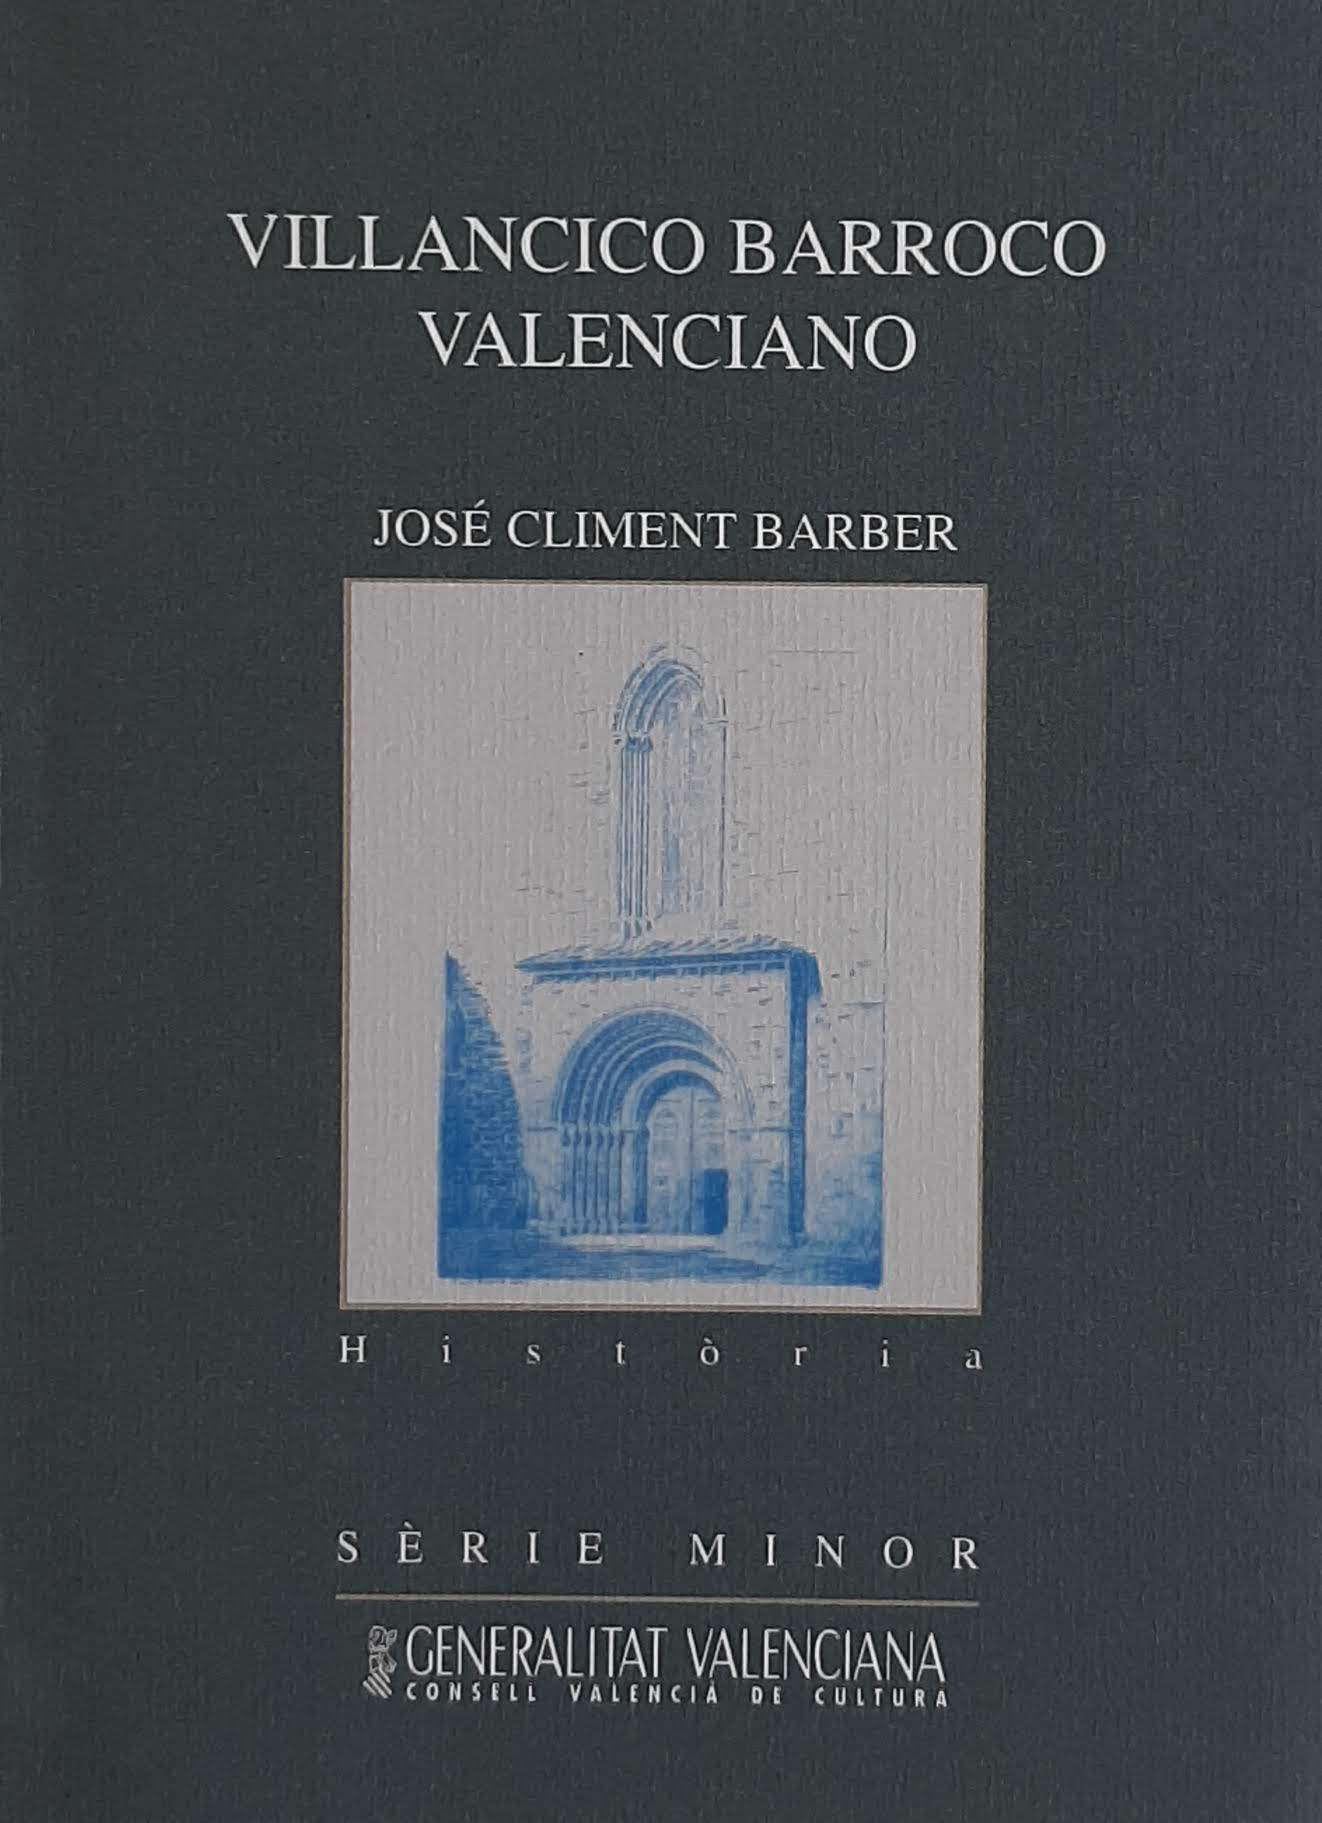 Villancico barroco valenciano. Nº 41. Sèrie Minor